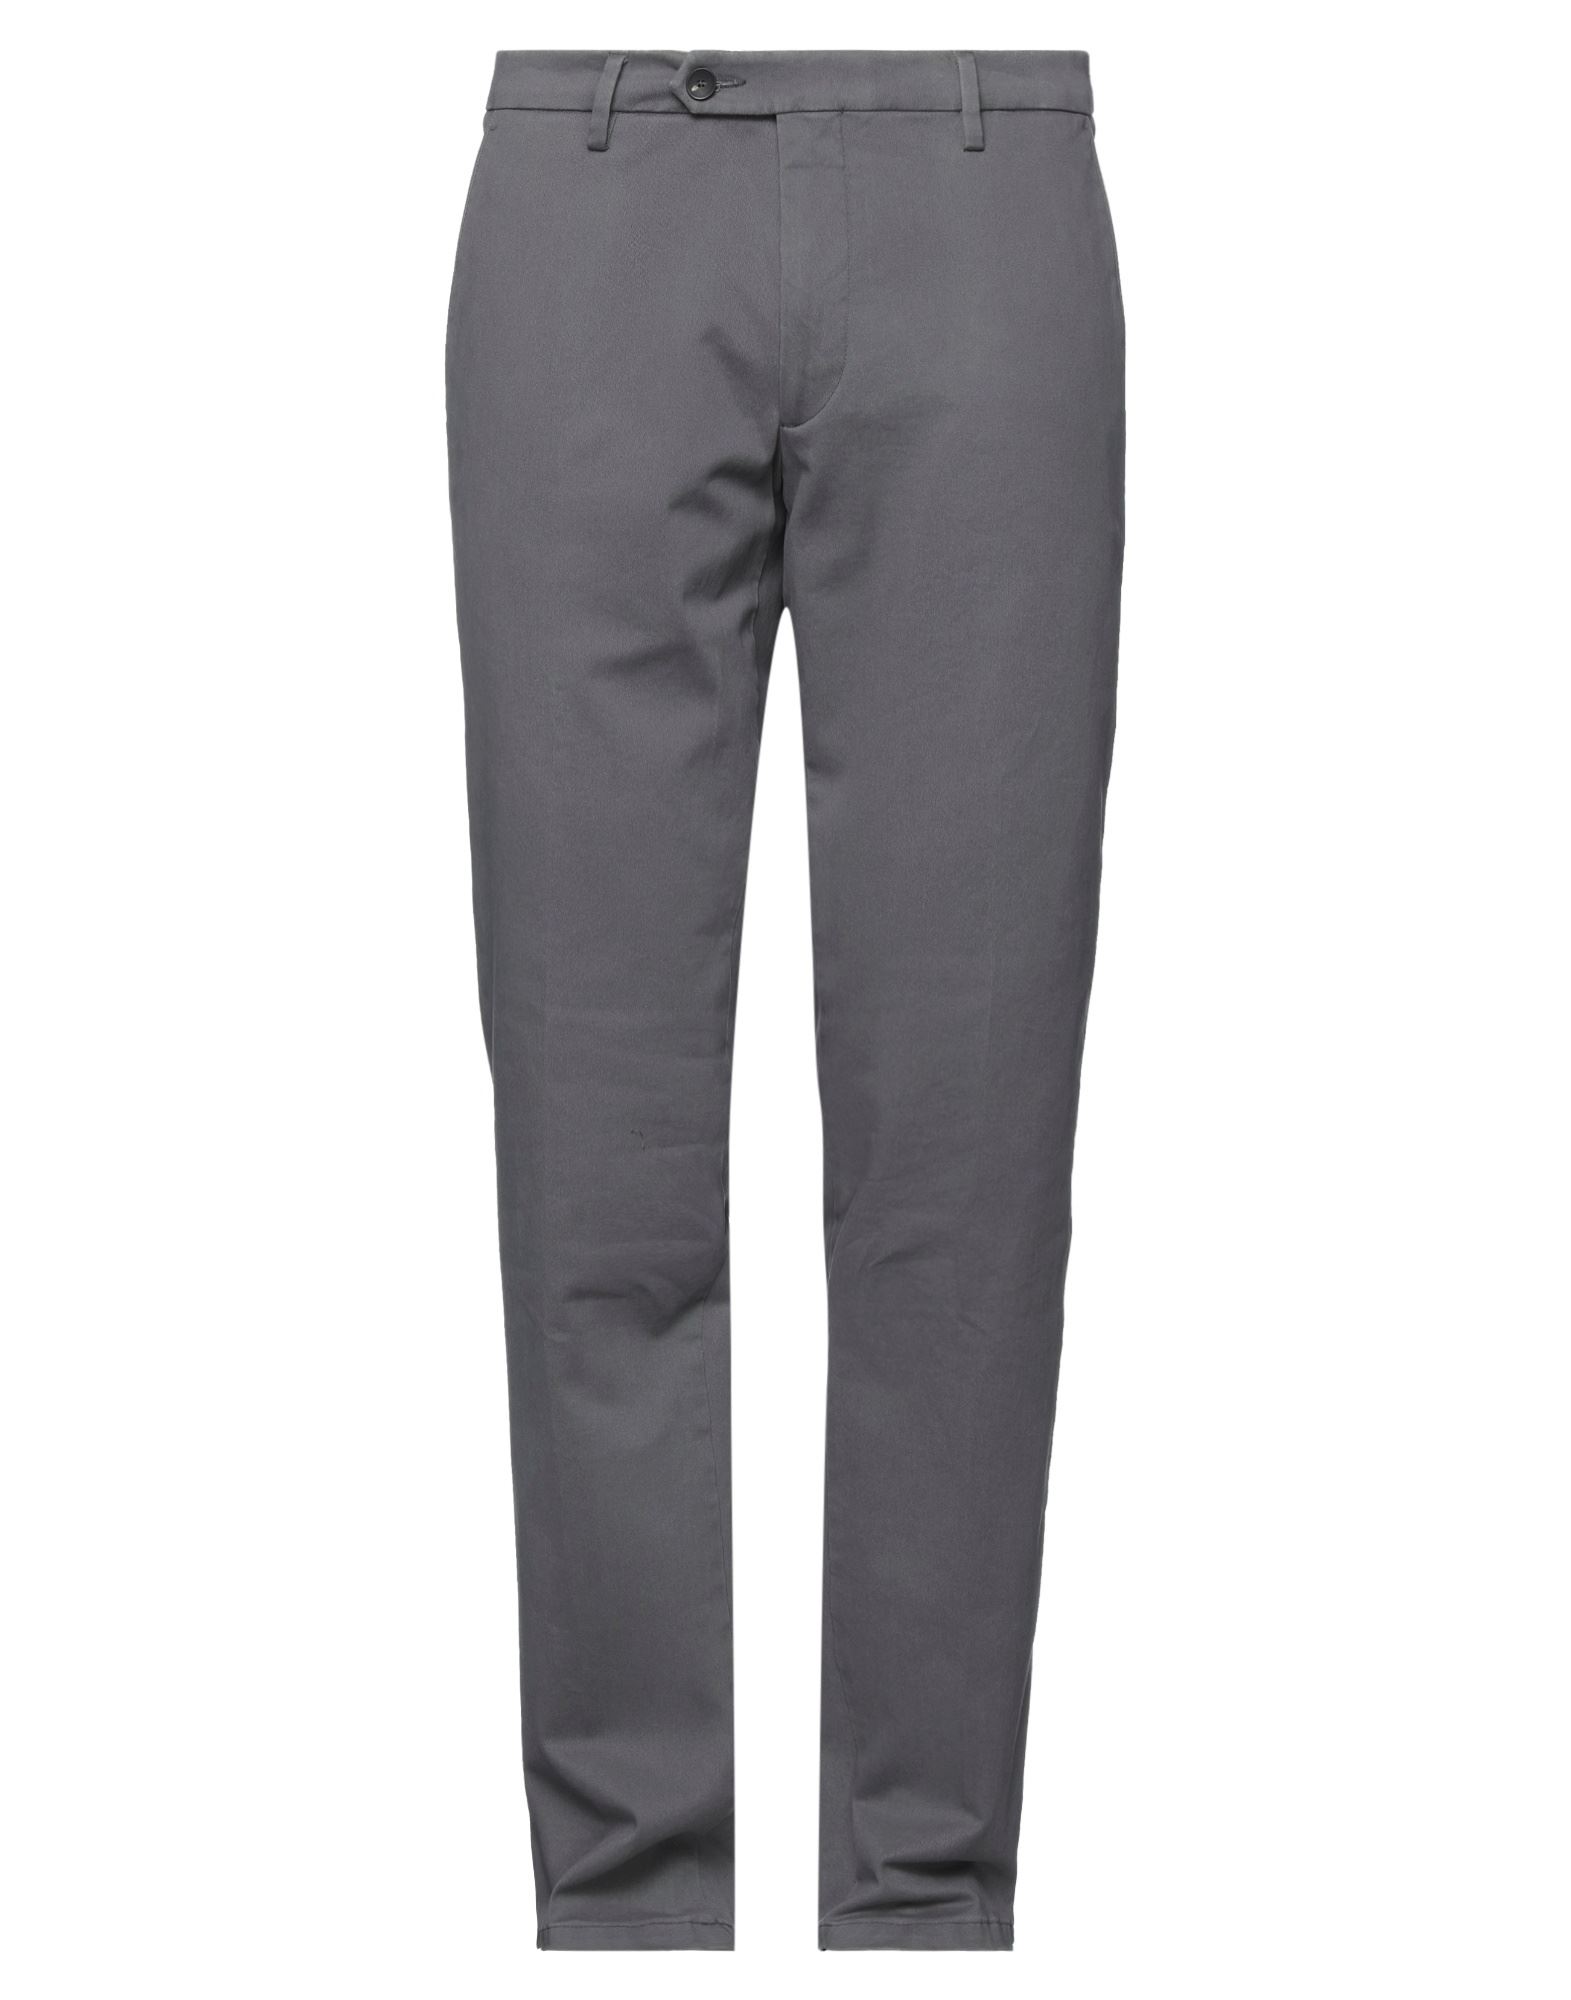 Michael Coal Man Pants Grey Size 31 Cotton, Elastane